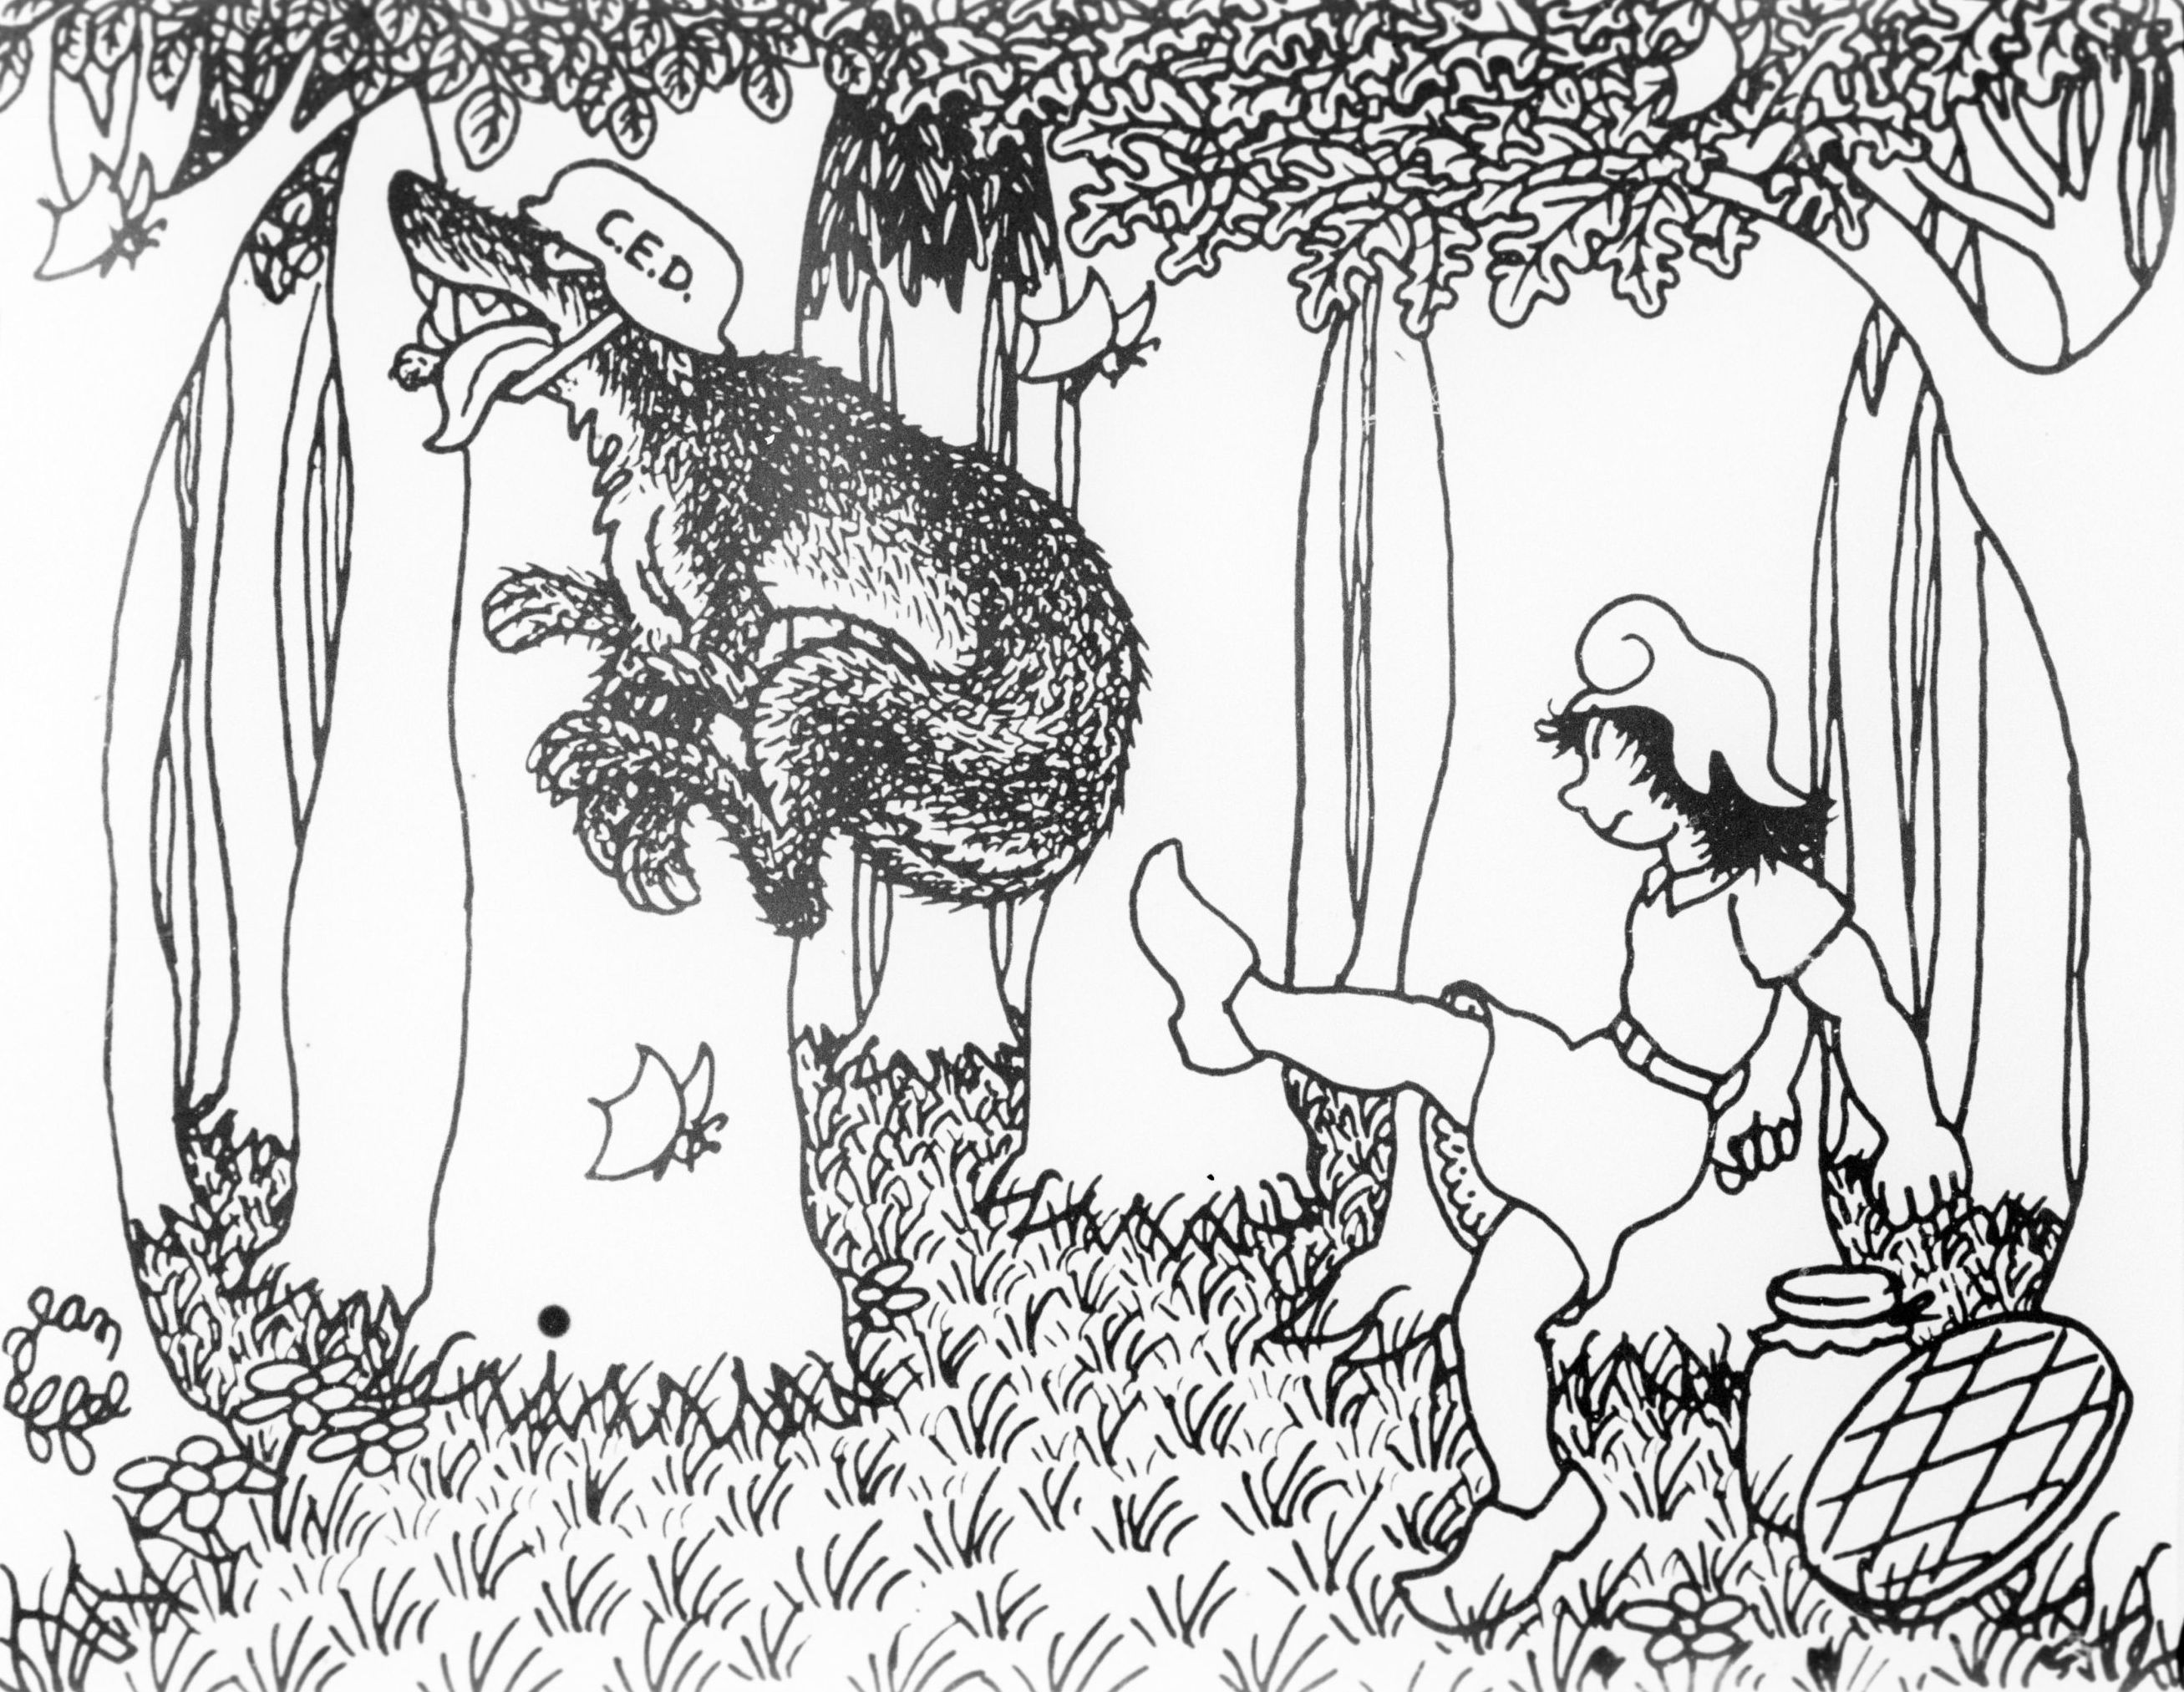 Репродукция рисунка французского карикатуриста Жана Эффеля "Победа маленькой Красной Шапочки".